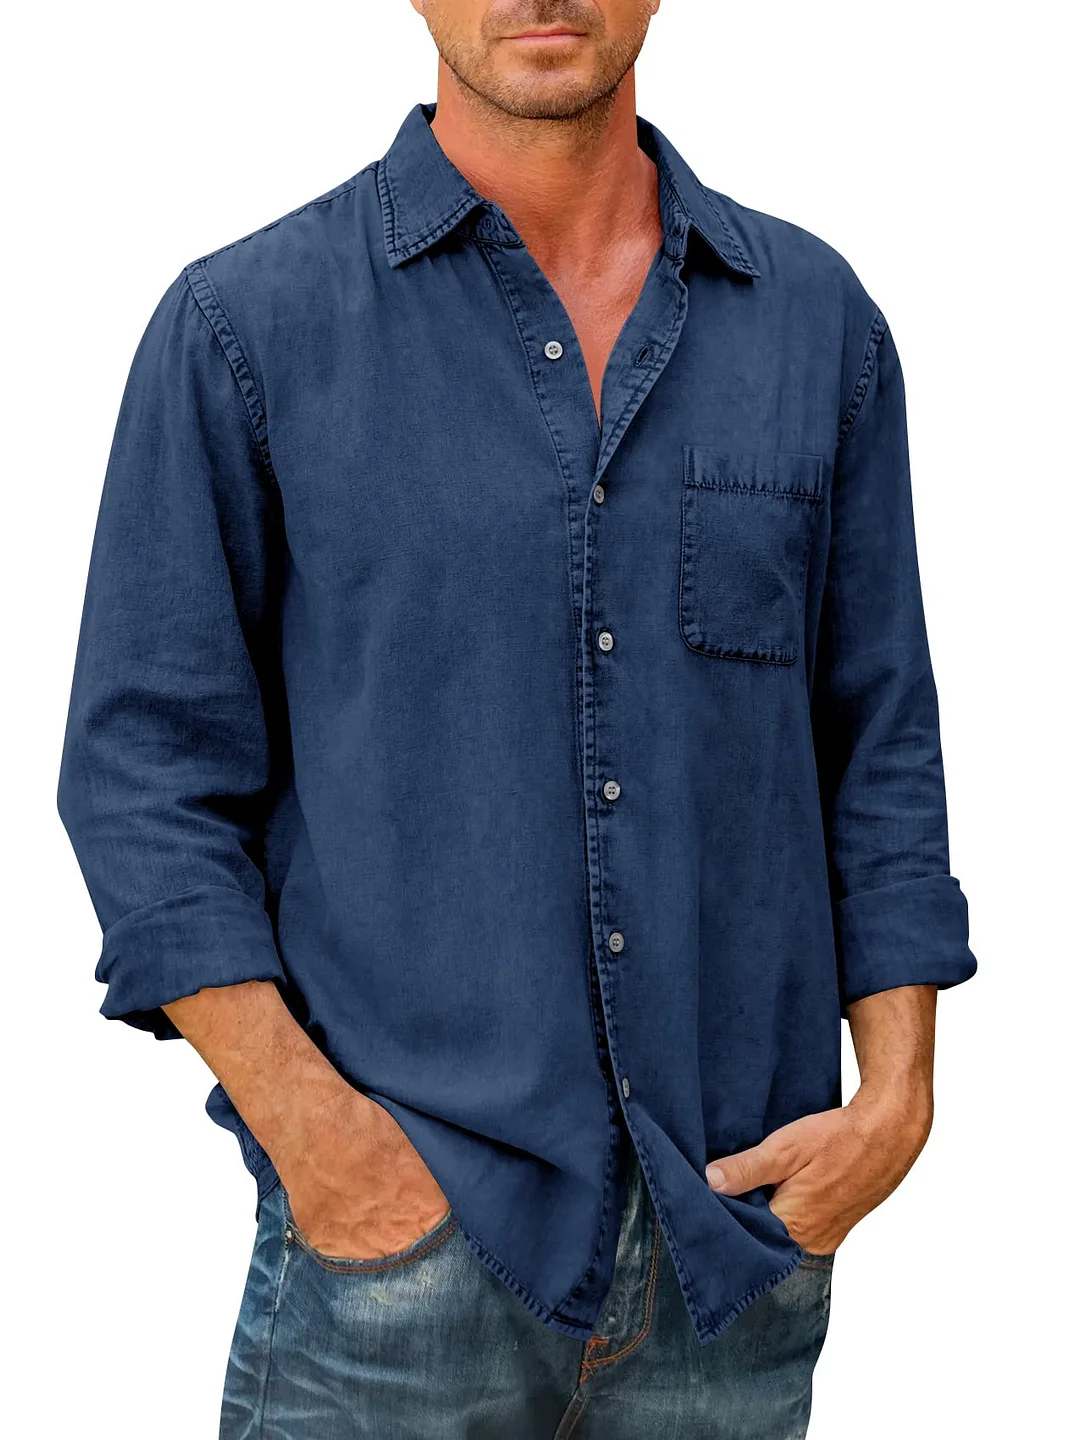 Men's Long Sleeve Cotton Linen Denim Button Shirt